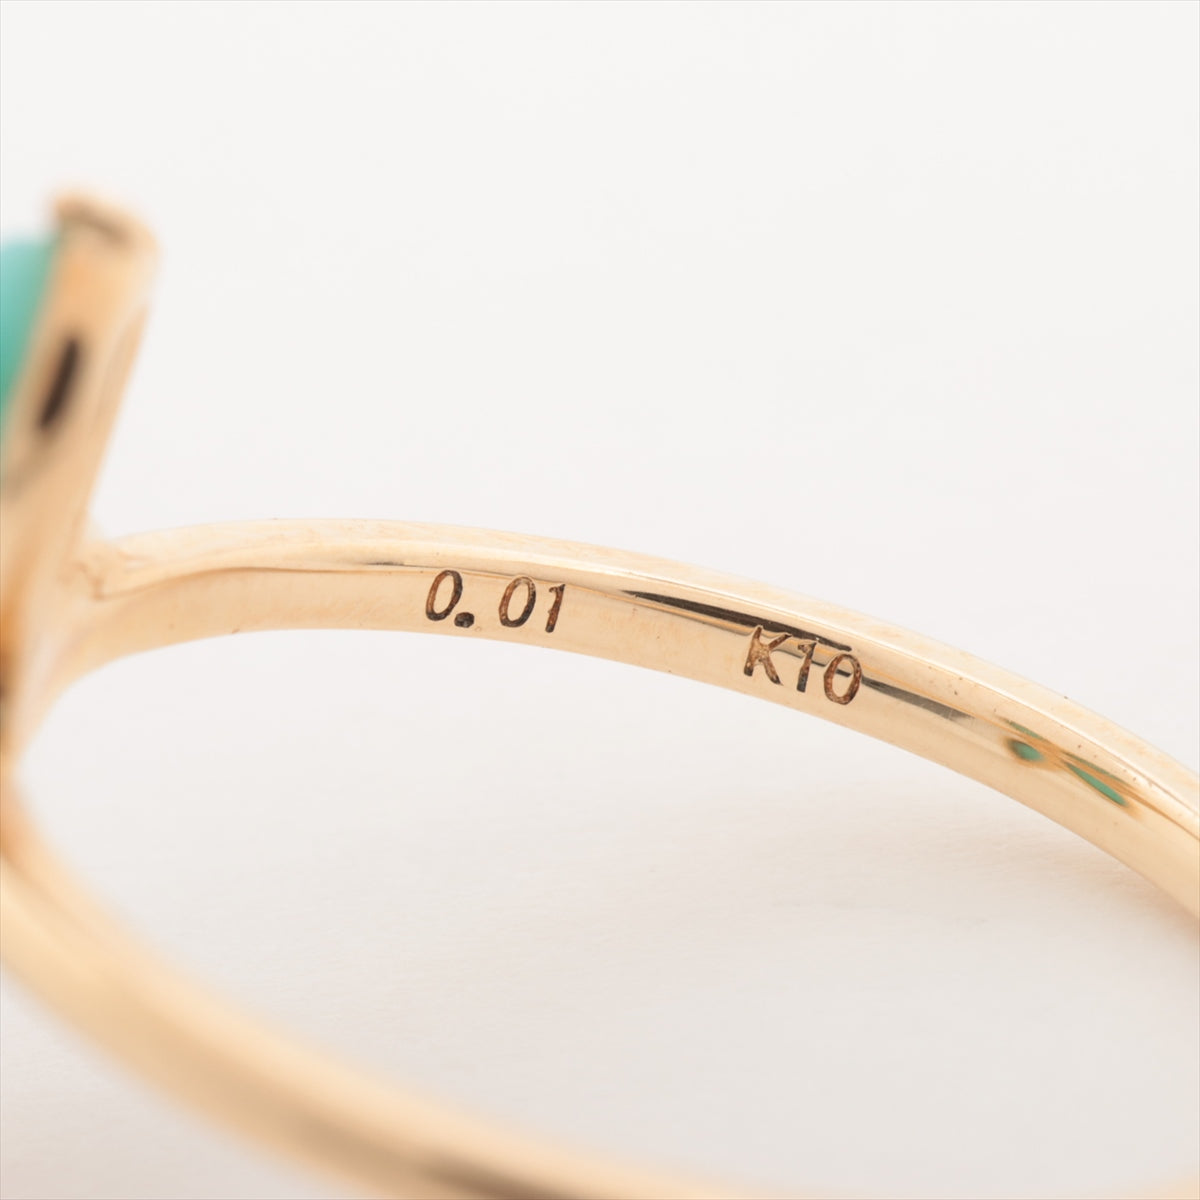 Agat Turquoise Diamond Ring K10 (YG) 1.4g 0.01 E